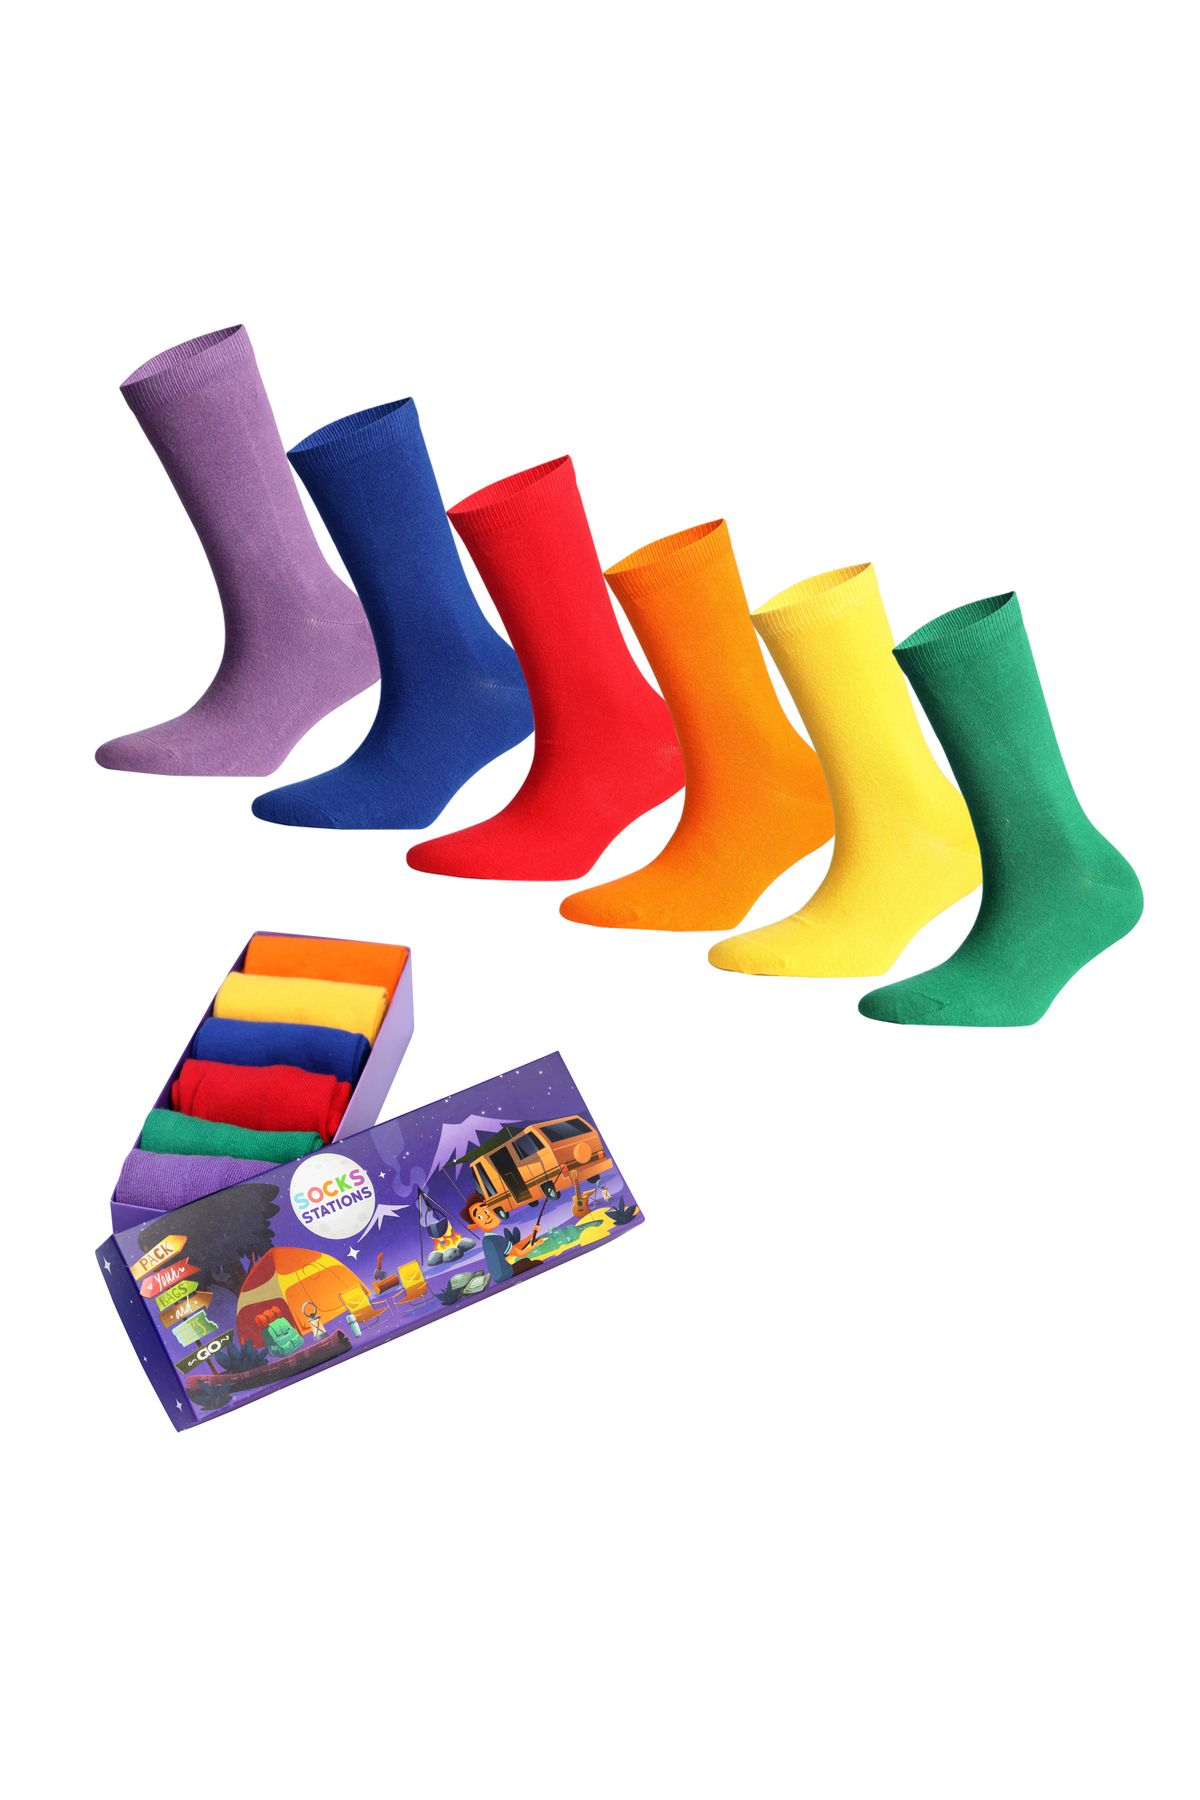 Socks Stations Kadın&erkek Çorap - Pamuklu Pastel Renkli Çorap Özel Kutulu Renkli Çorap 6'lı